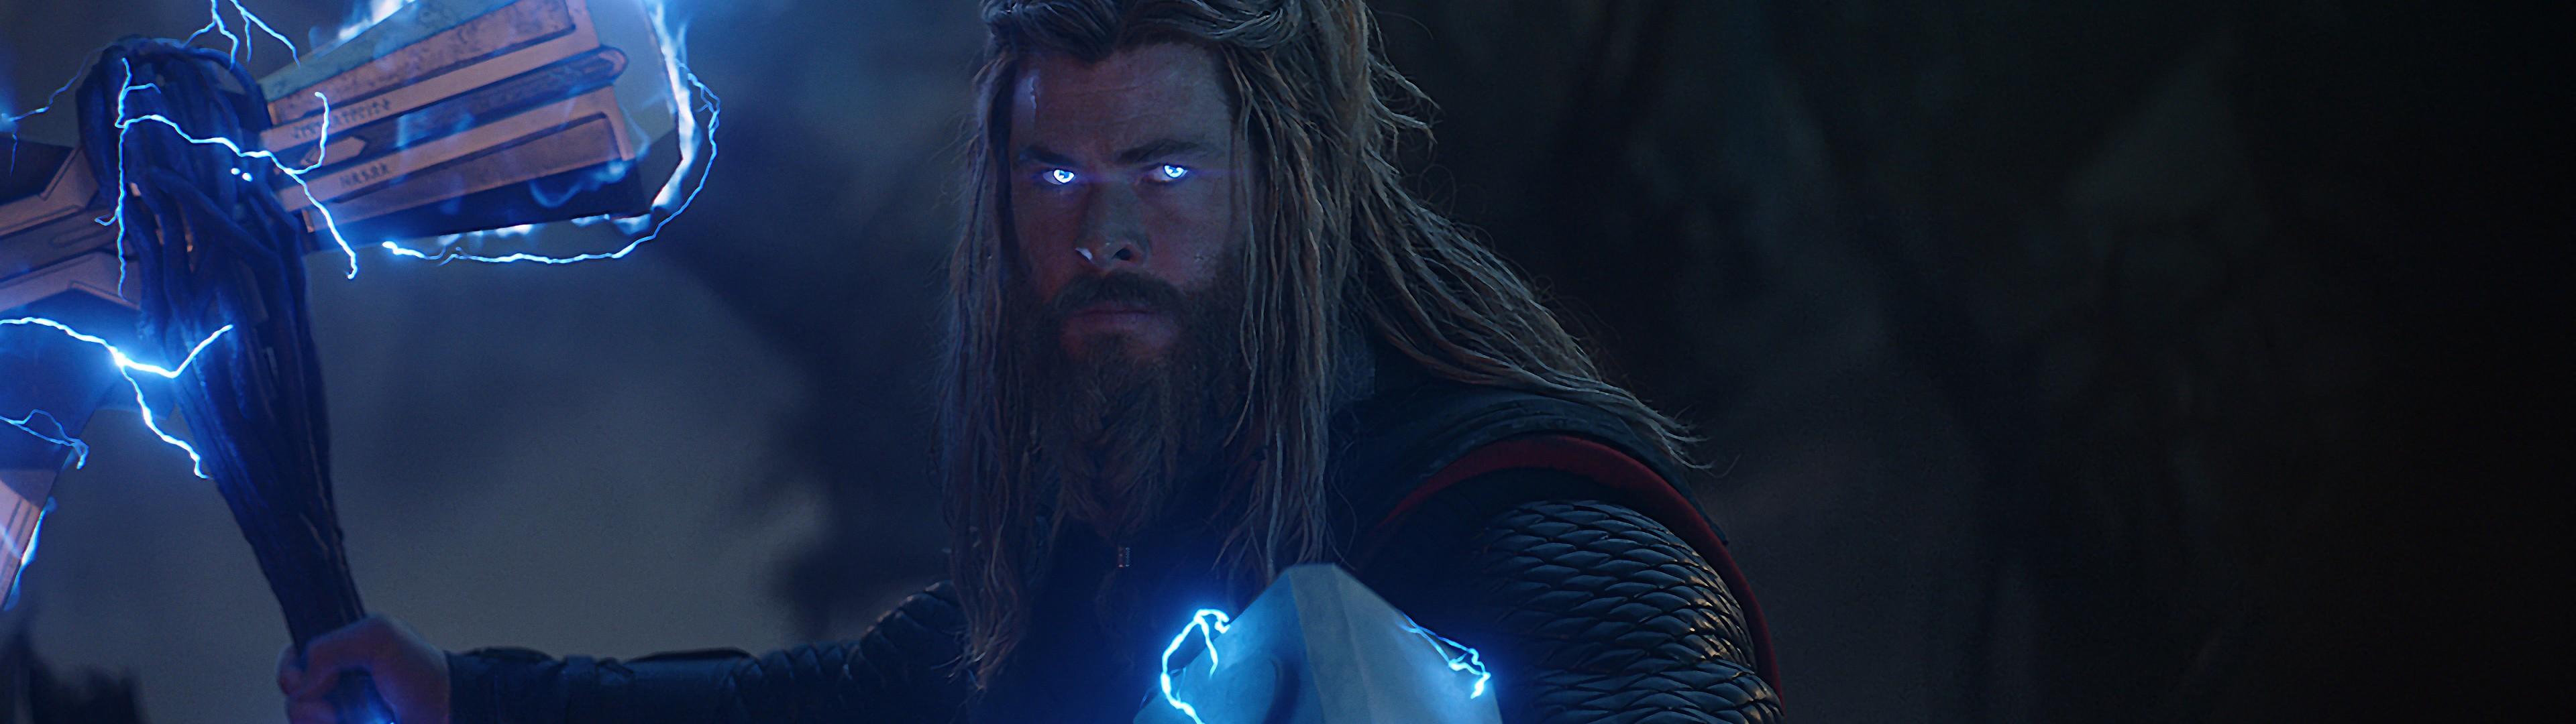 Avengers: Endgame Thor Stormbreaker Mjolnir Lightning 8K